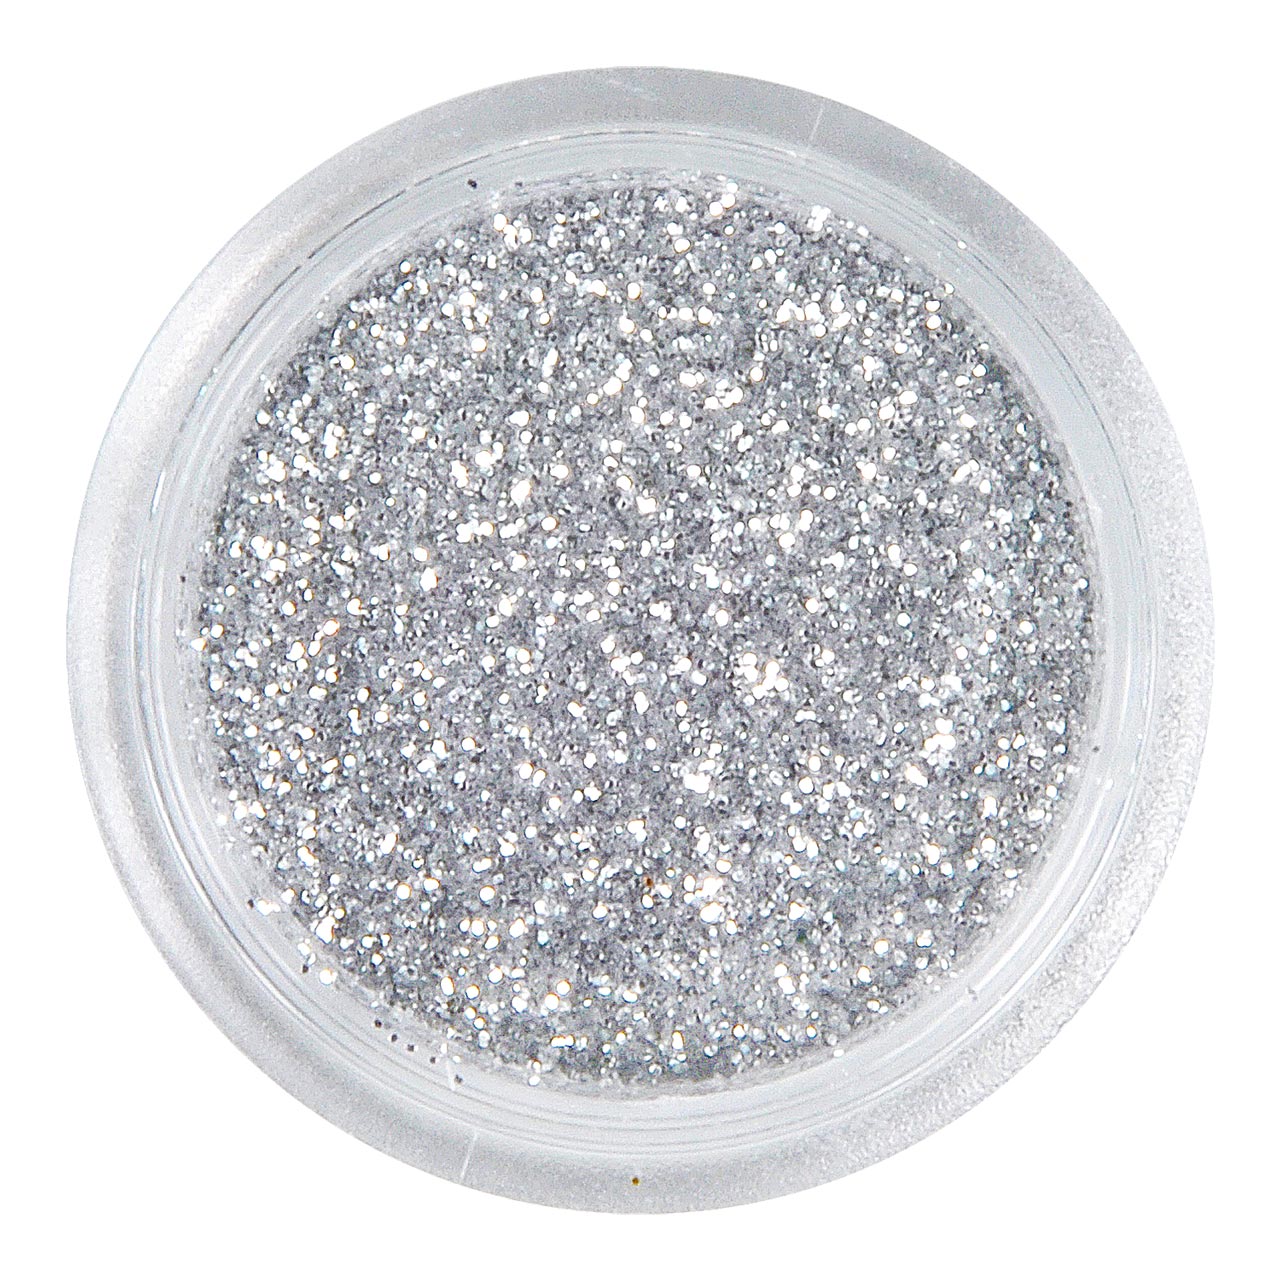 Glitter in Dose - Silver